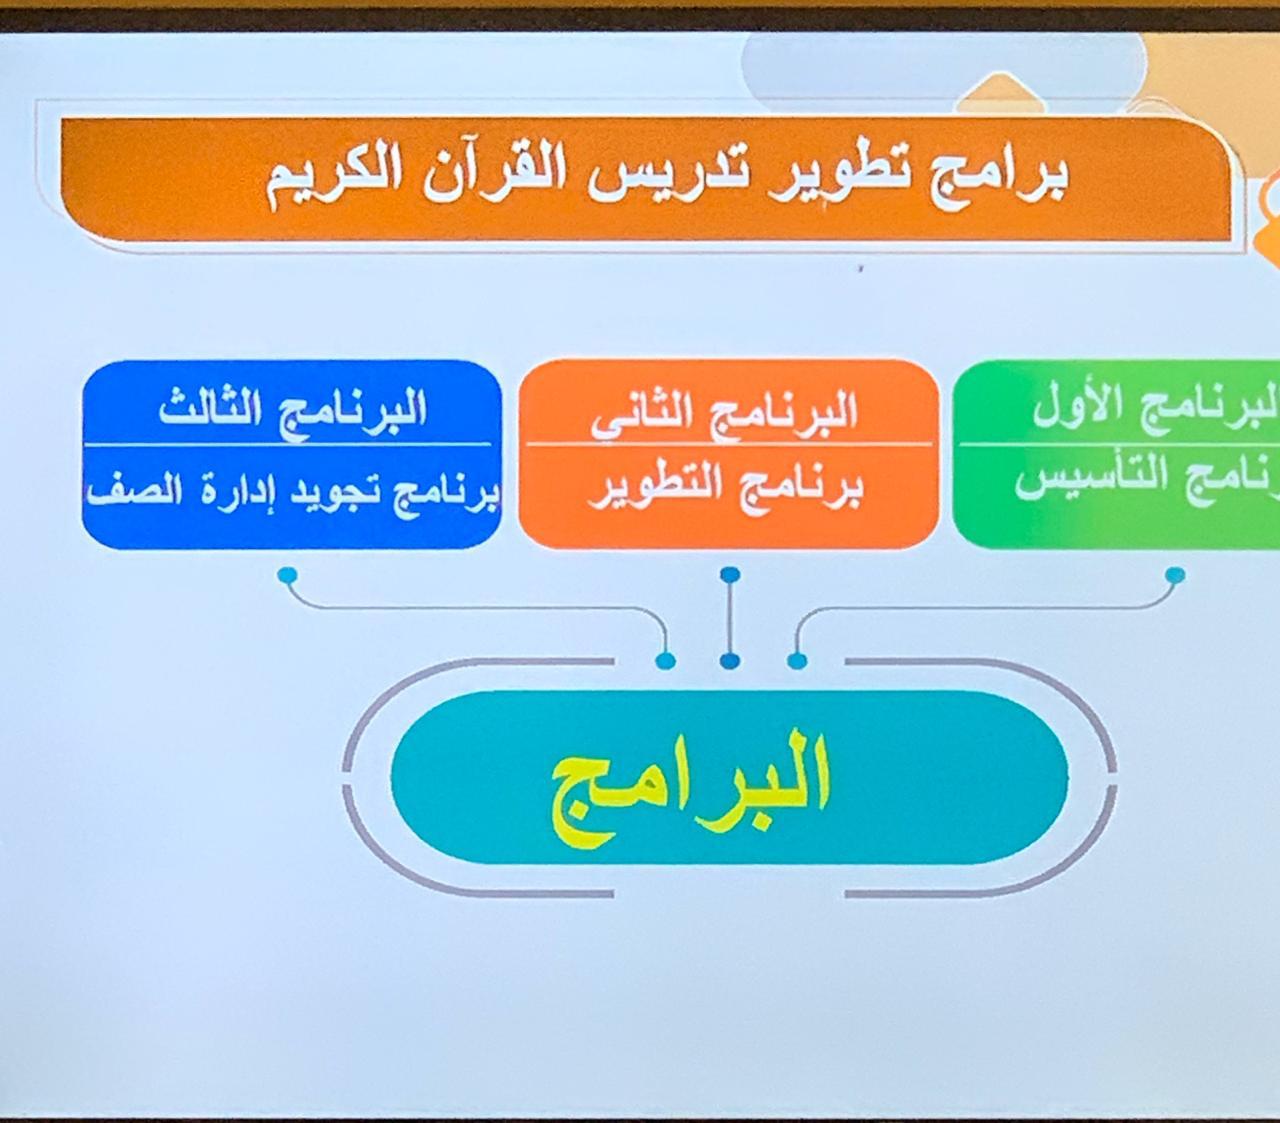 إشراف تعليم مكة للبنات يدعم التحصيل الدراسي بــ 73 برنامج و ورشة تدريبية